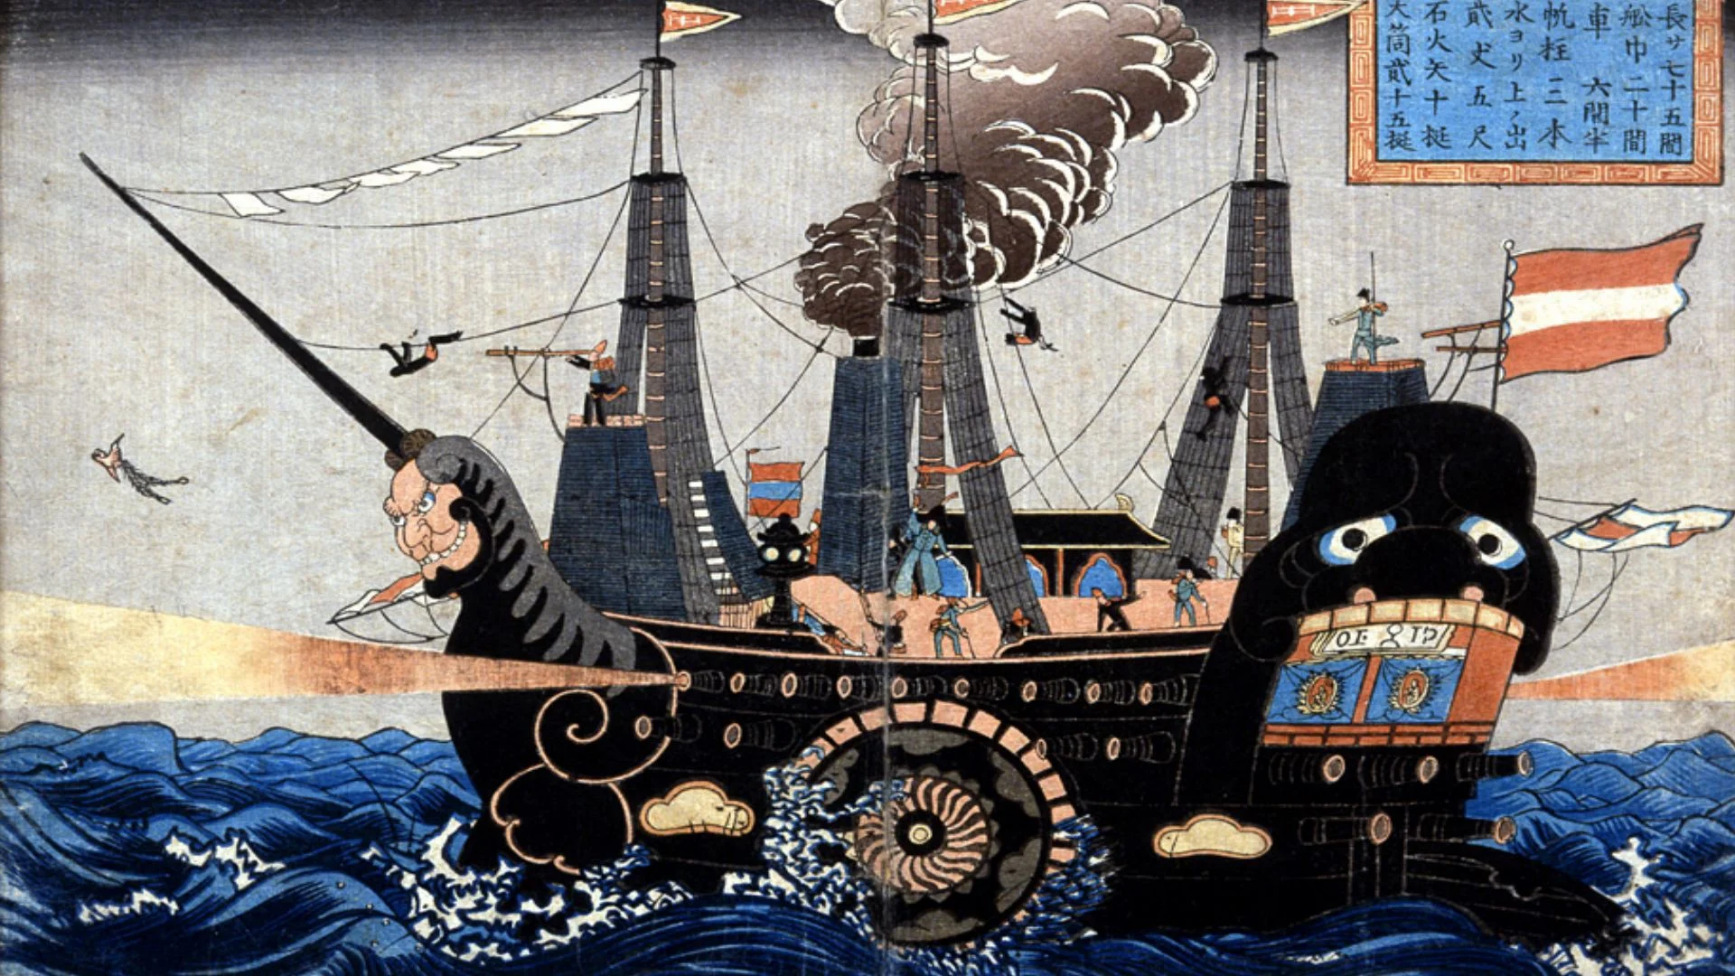 日本人がいろいろと描いた黒船のアメリカ国旗を見てみよう　海外の反応2